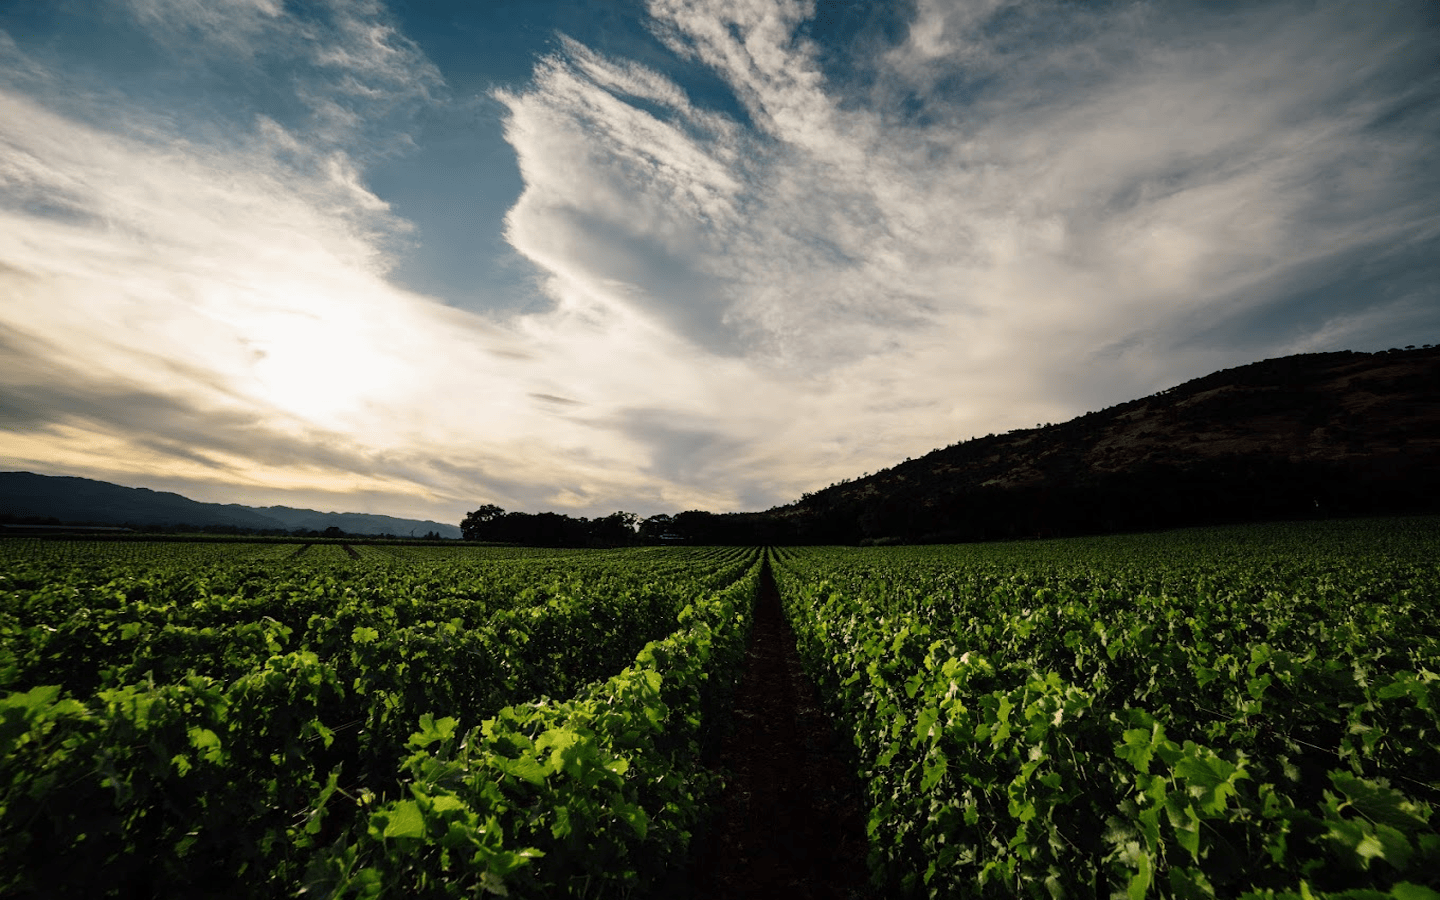 rudd winery and vineyards